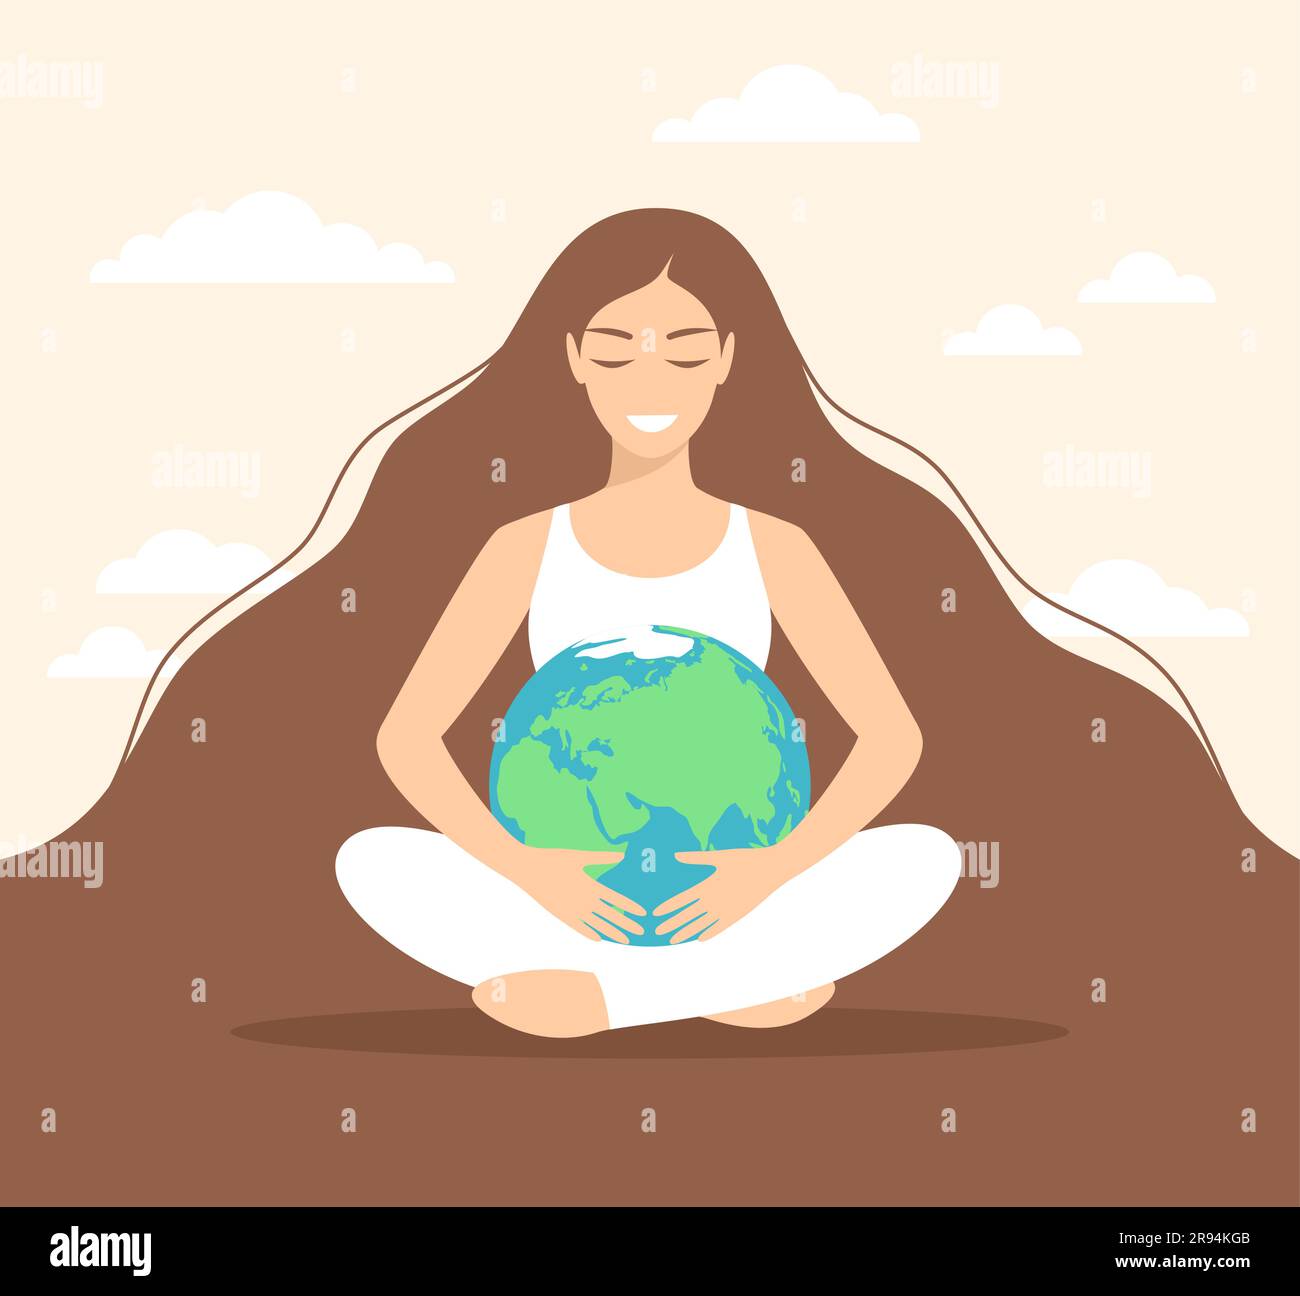 Giovane donna sorridente con capelli lunghi seduta in posizione di loto e abbracciando il pianeta Terra. Cura e protezione dell'ambiente Illustrazione Vettoriale